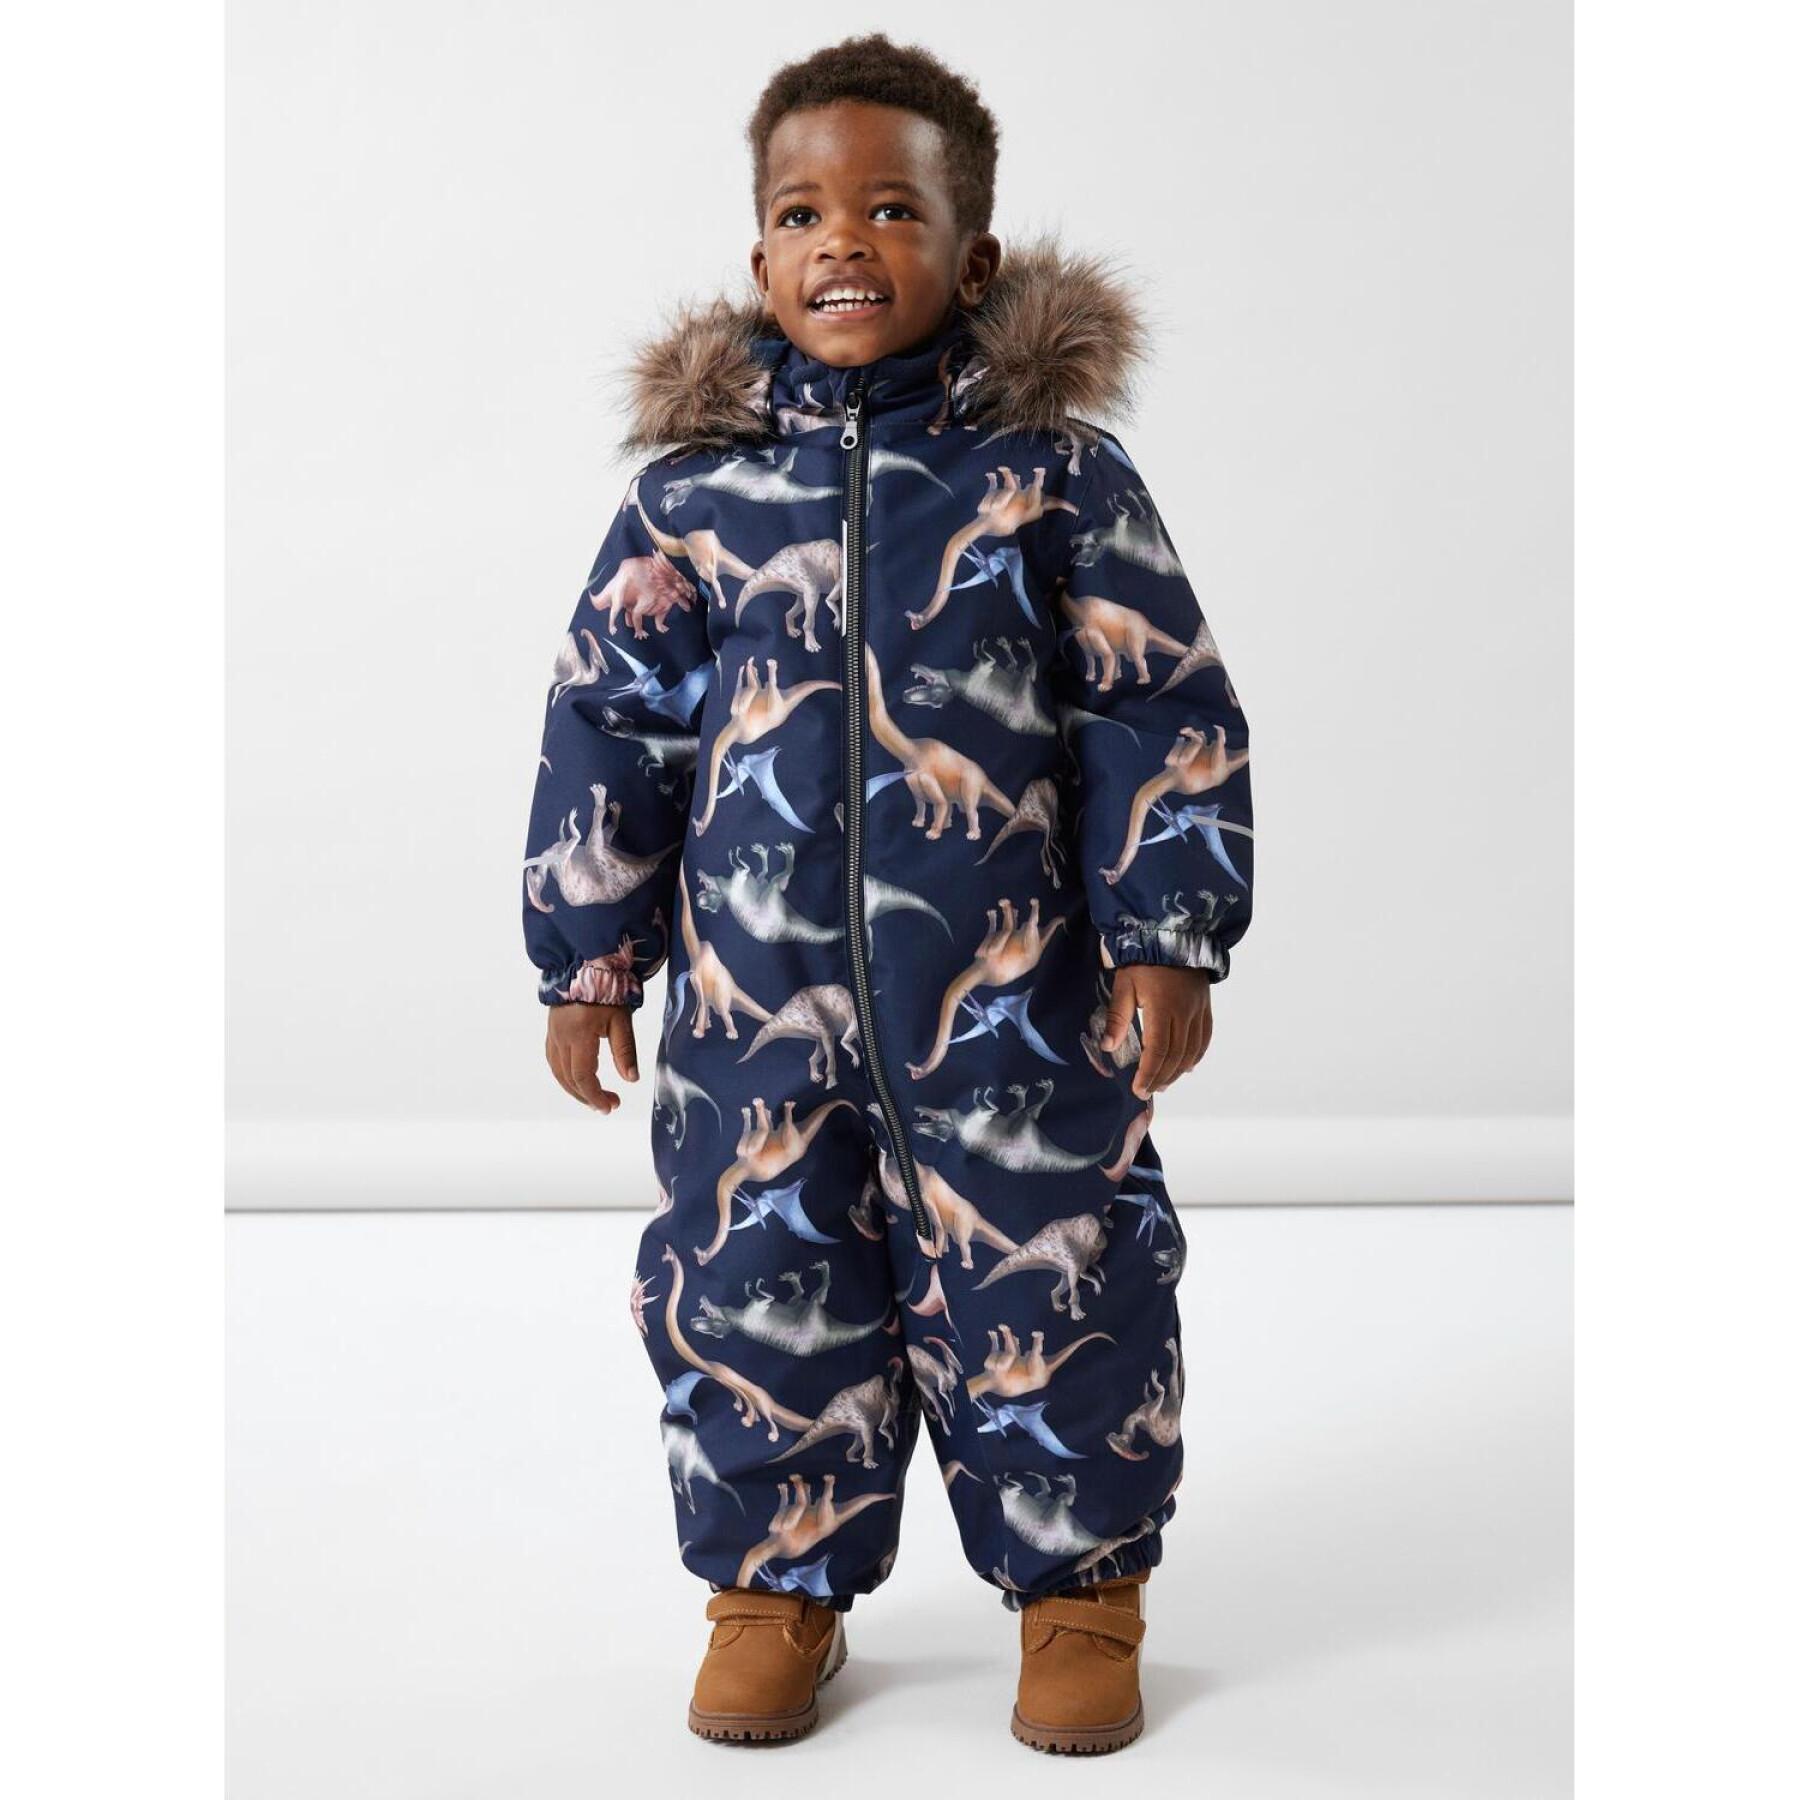 Baby suit Name it Snow10 Dino Dream